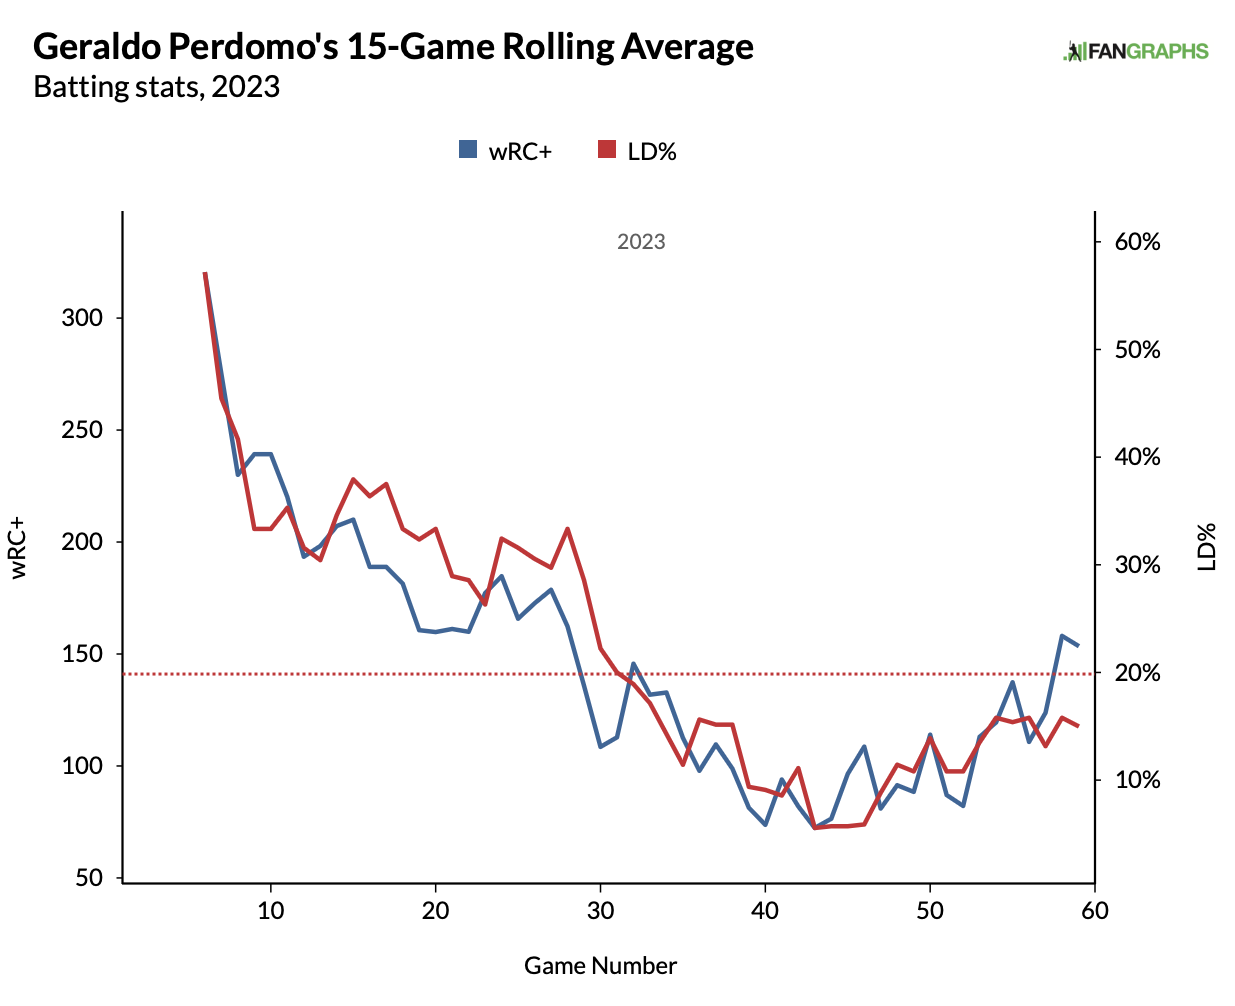 Geraldo Perdomo wRC+ versus line drive for the 2023 season via FanGraphs.